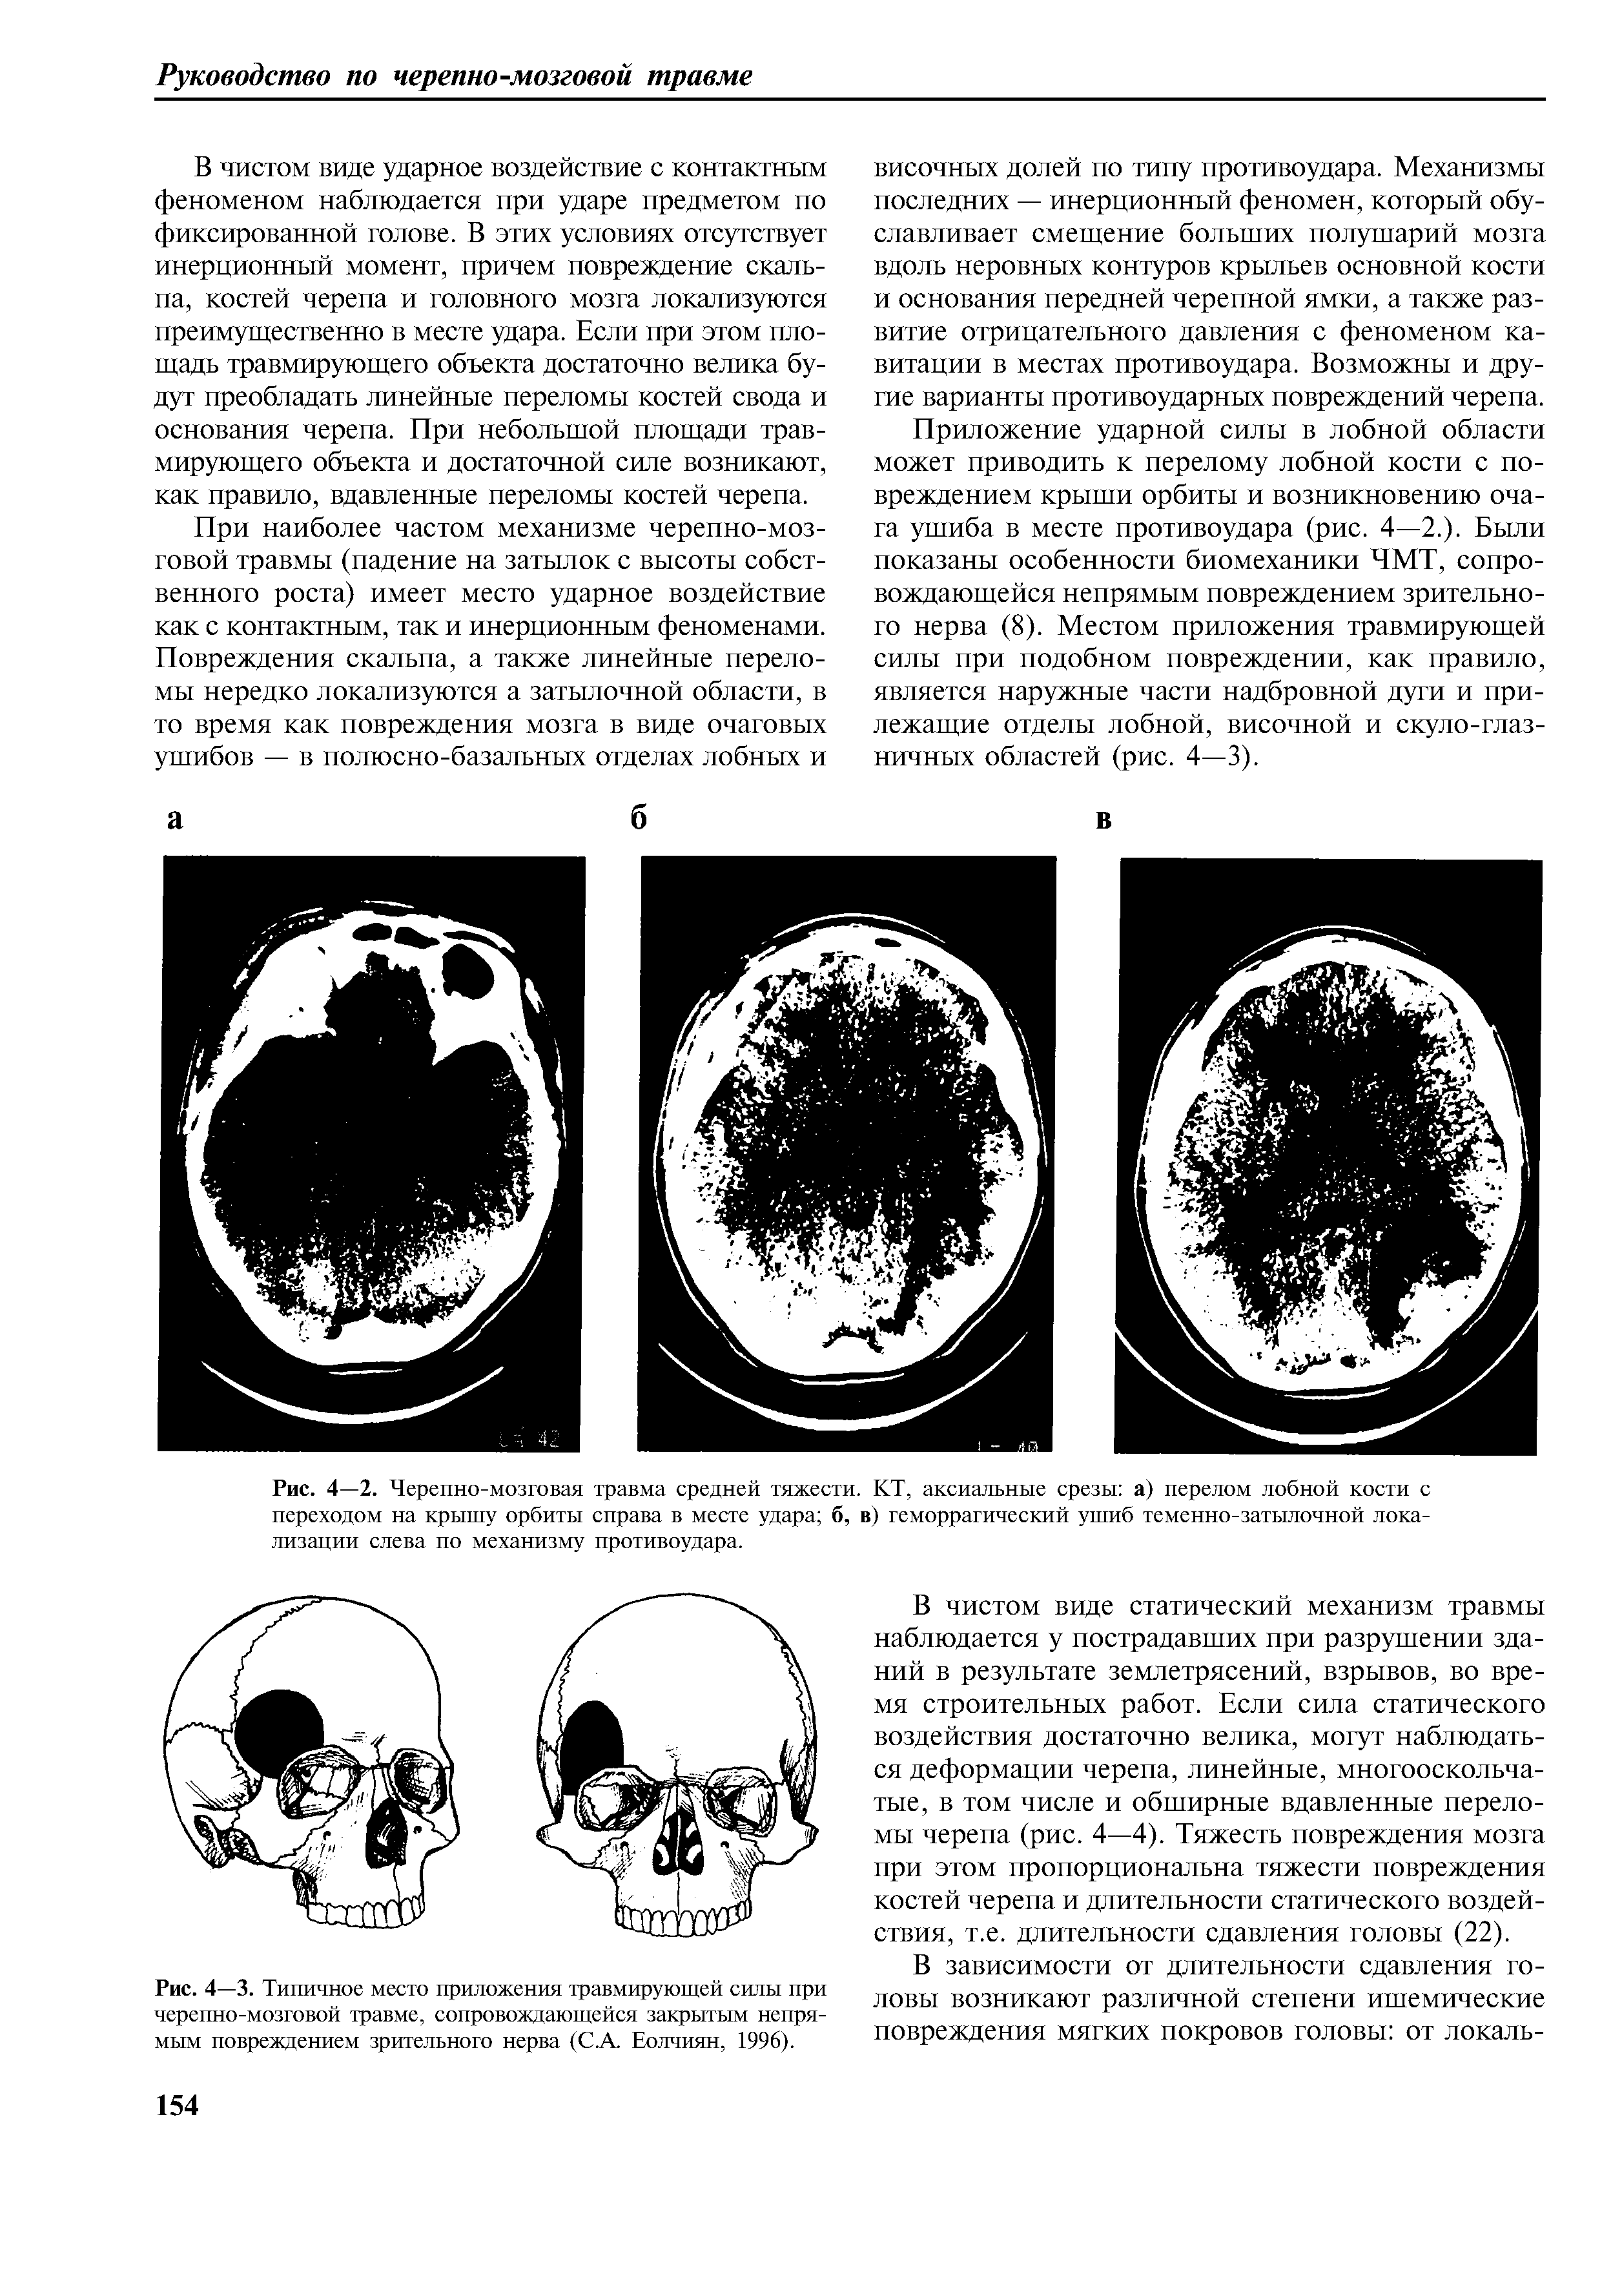 Рис. 4—3. Типичное место приложения травмирующей силы при черепно-мозговой травме, сопровождающейся закрытым непрямым повреждением зрительного нерва (С.А. Еолчиян, 1996).